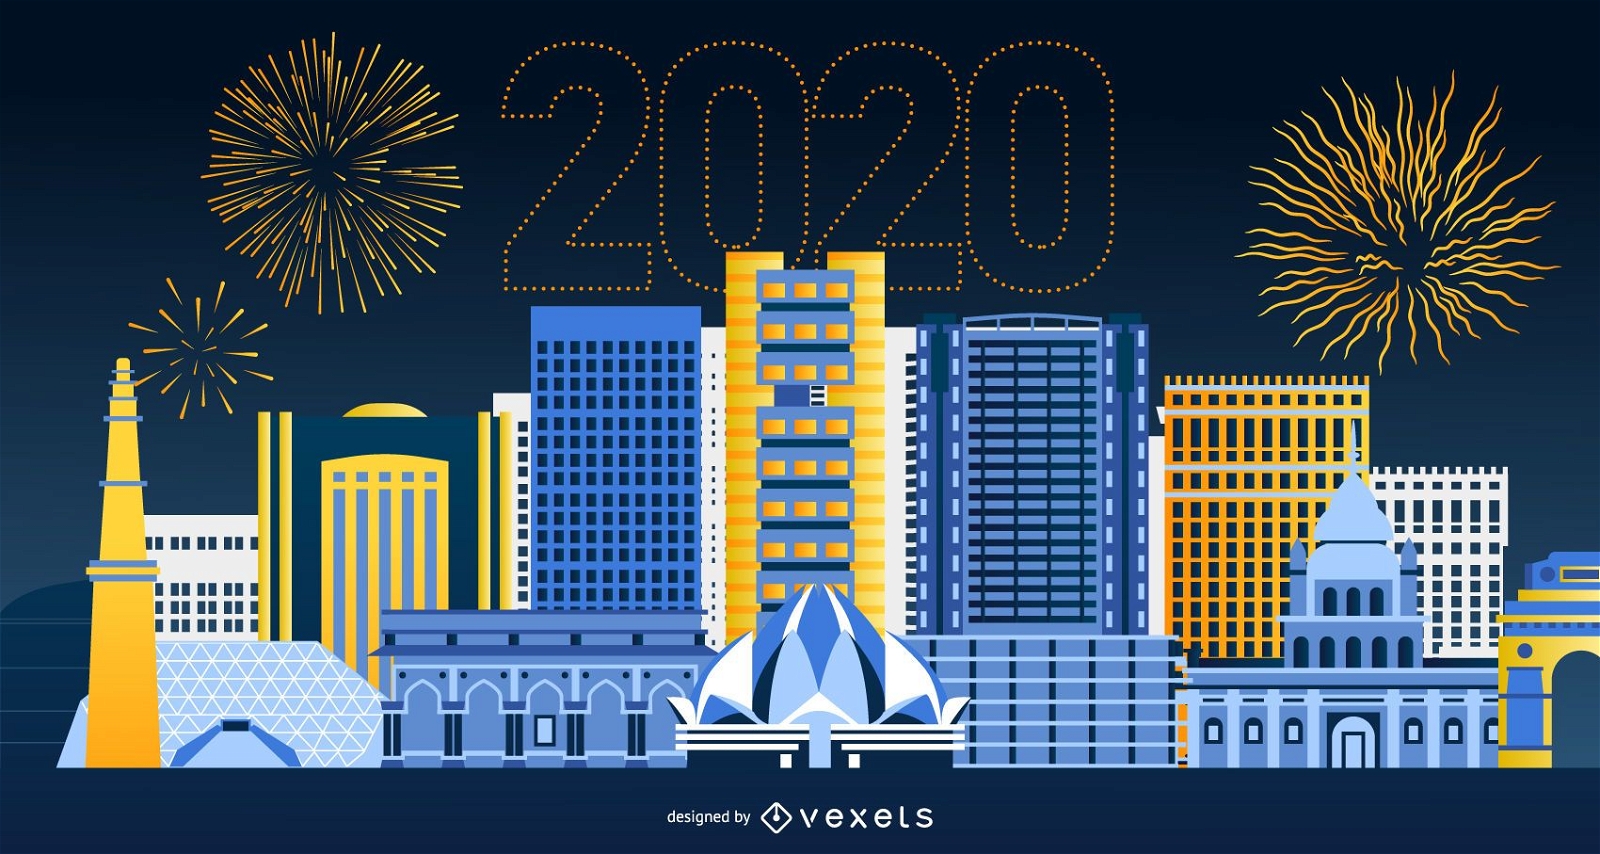 Feliz 2020 dise?o de banner del horizonte de Delhi